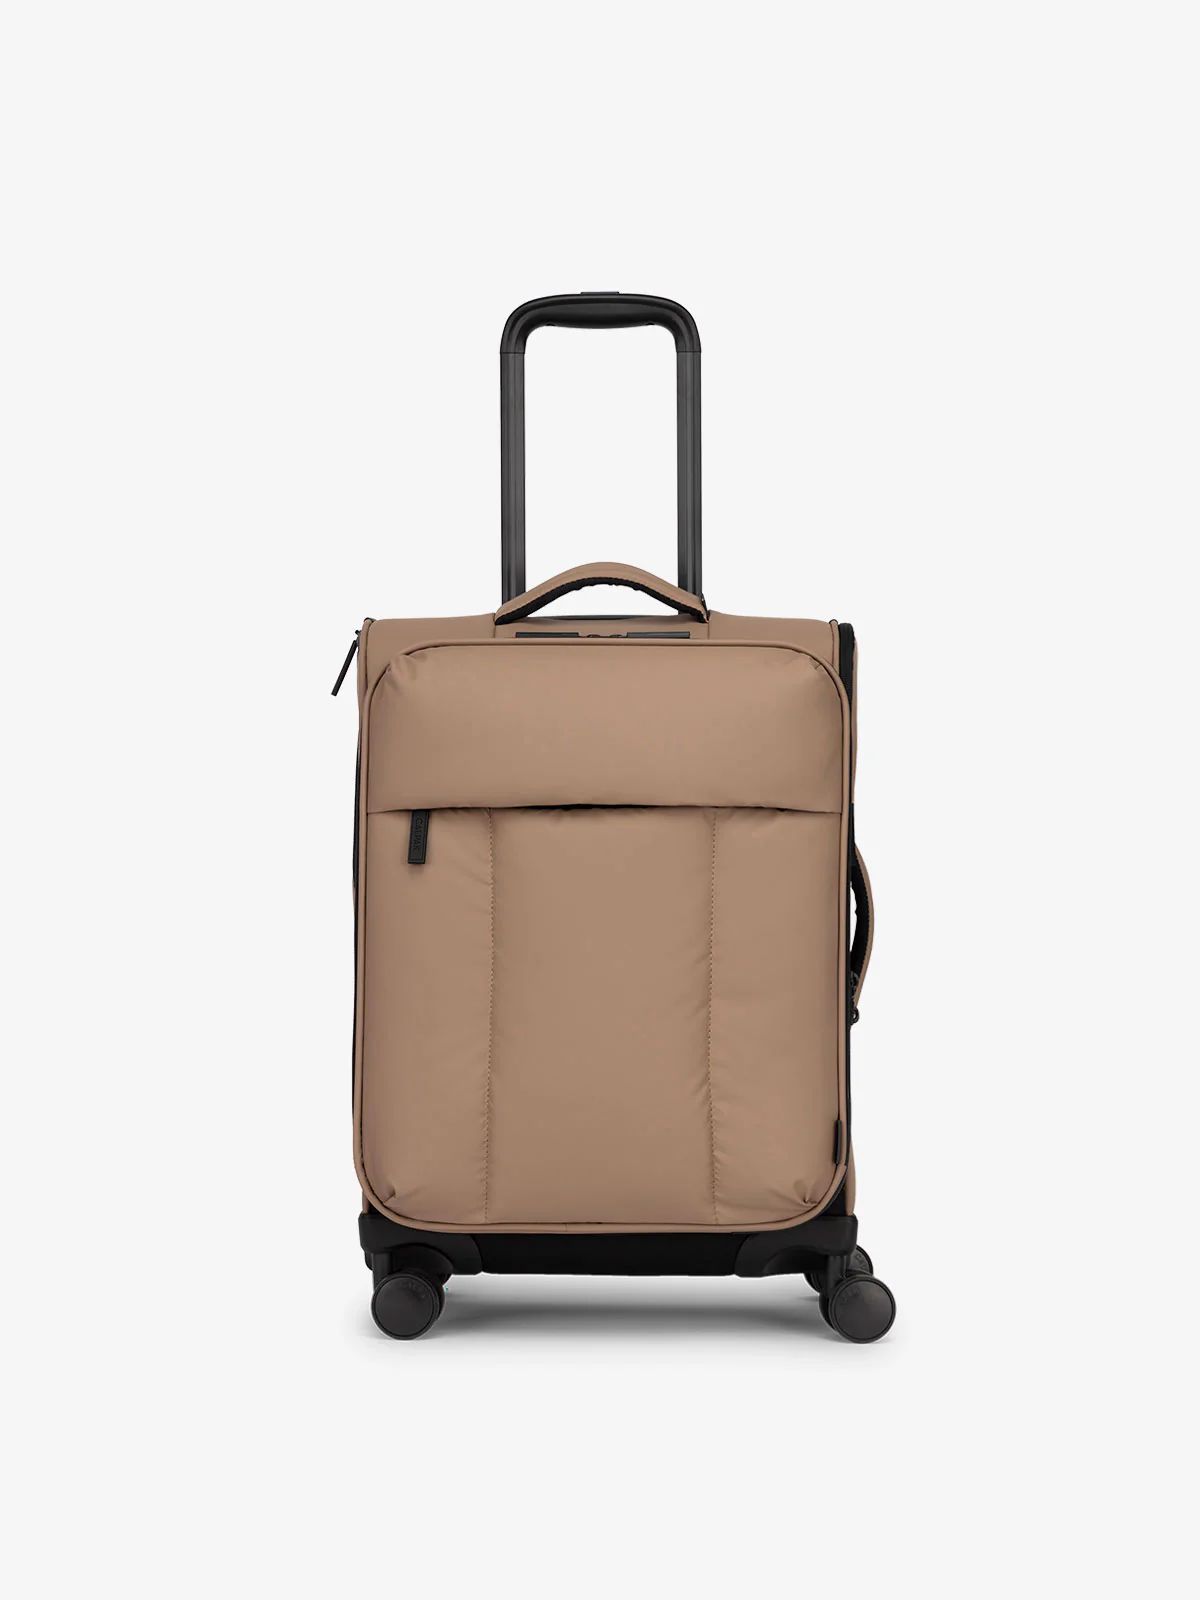 Luka Soft-Sided Carry-On Luggage | CALPAK | CALPAK Travel